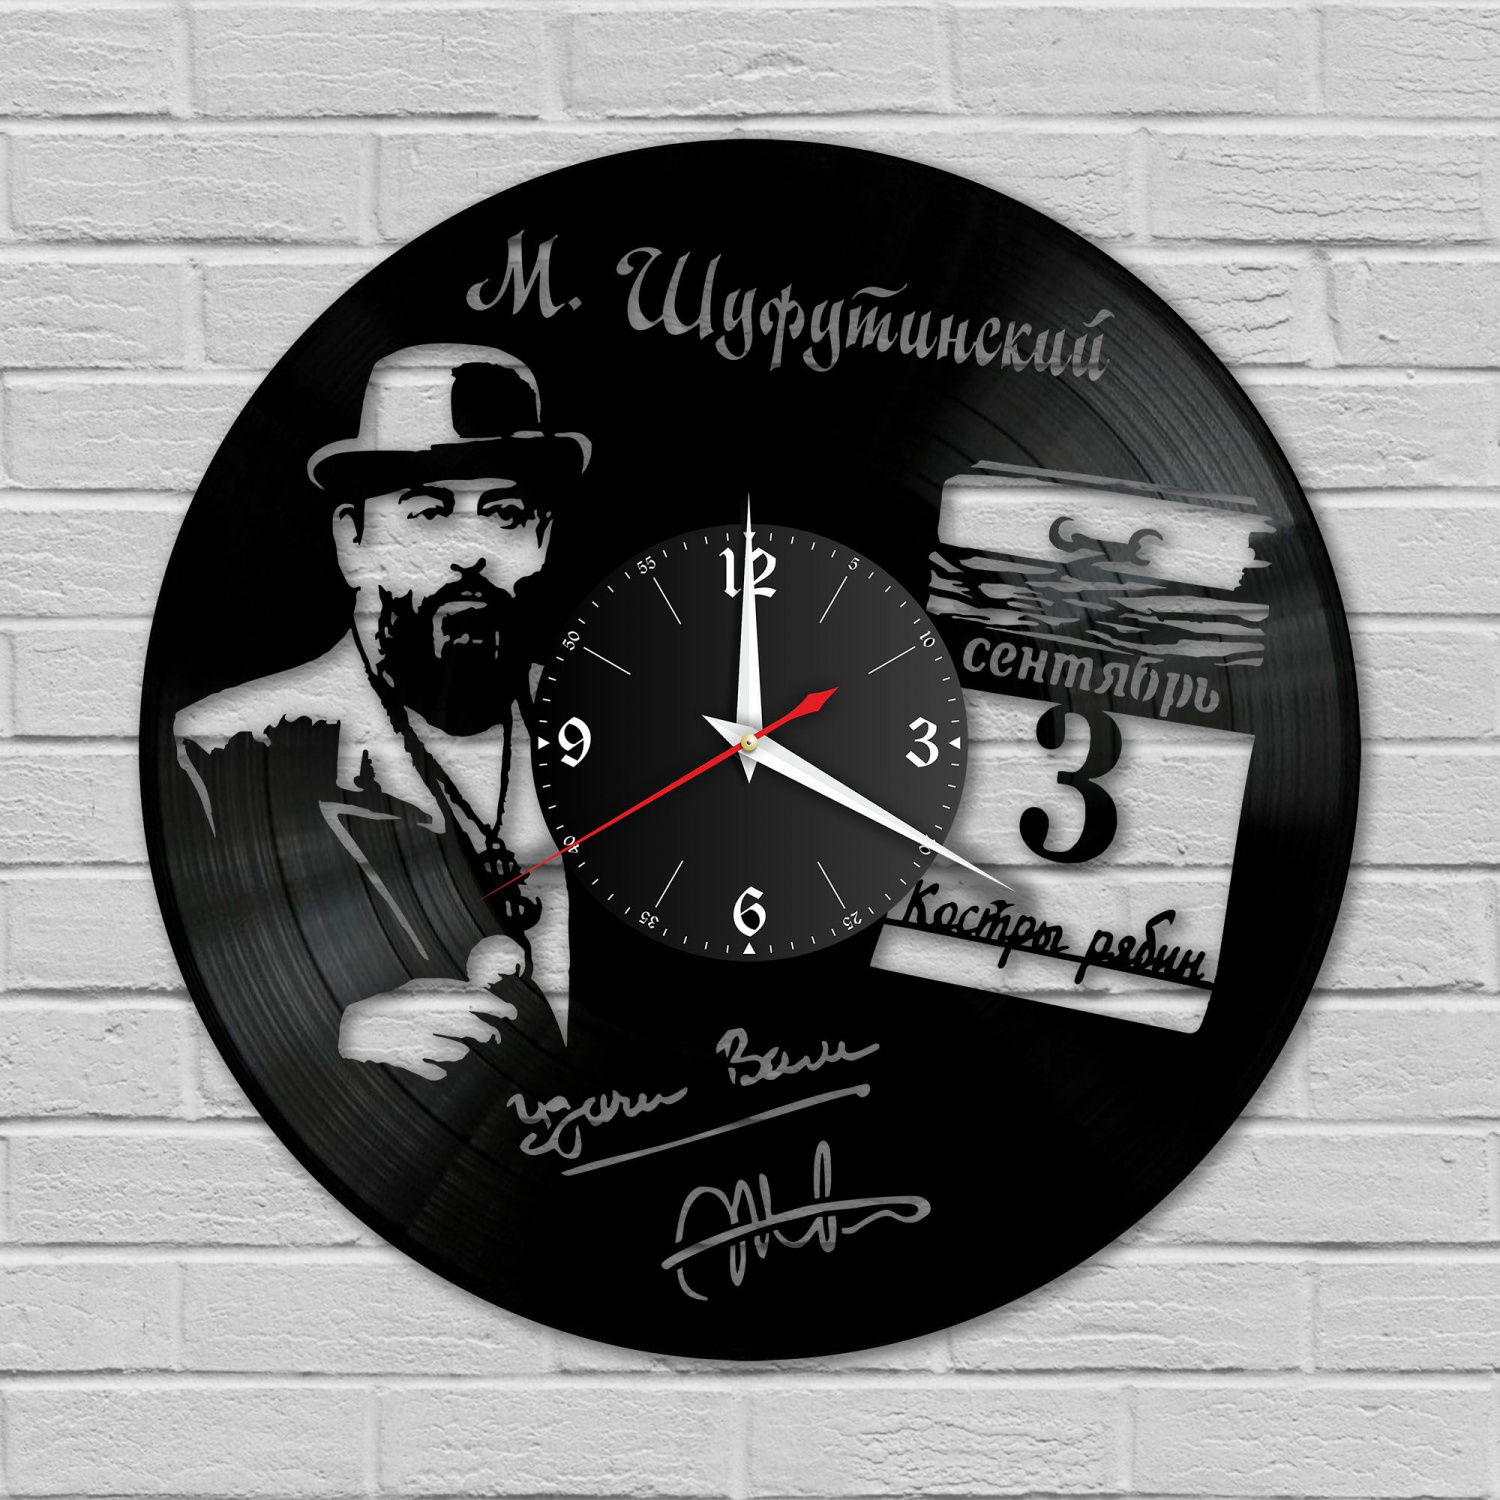 Часы настенные "Михаил Шуфутинский (3 сентября)" из винила, №1 VC-10260